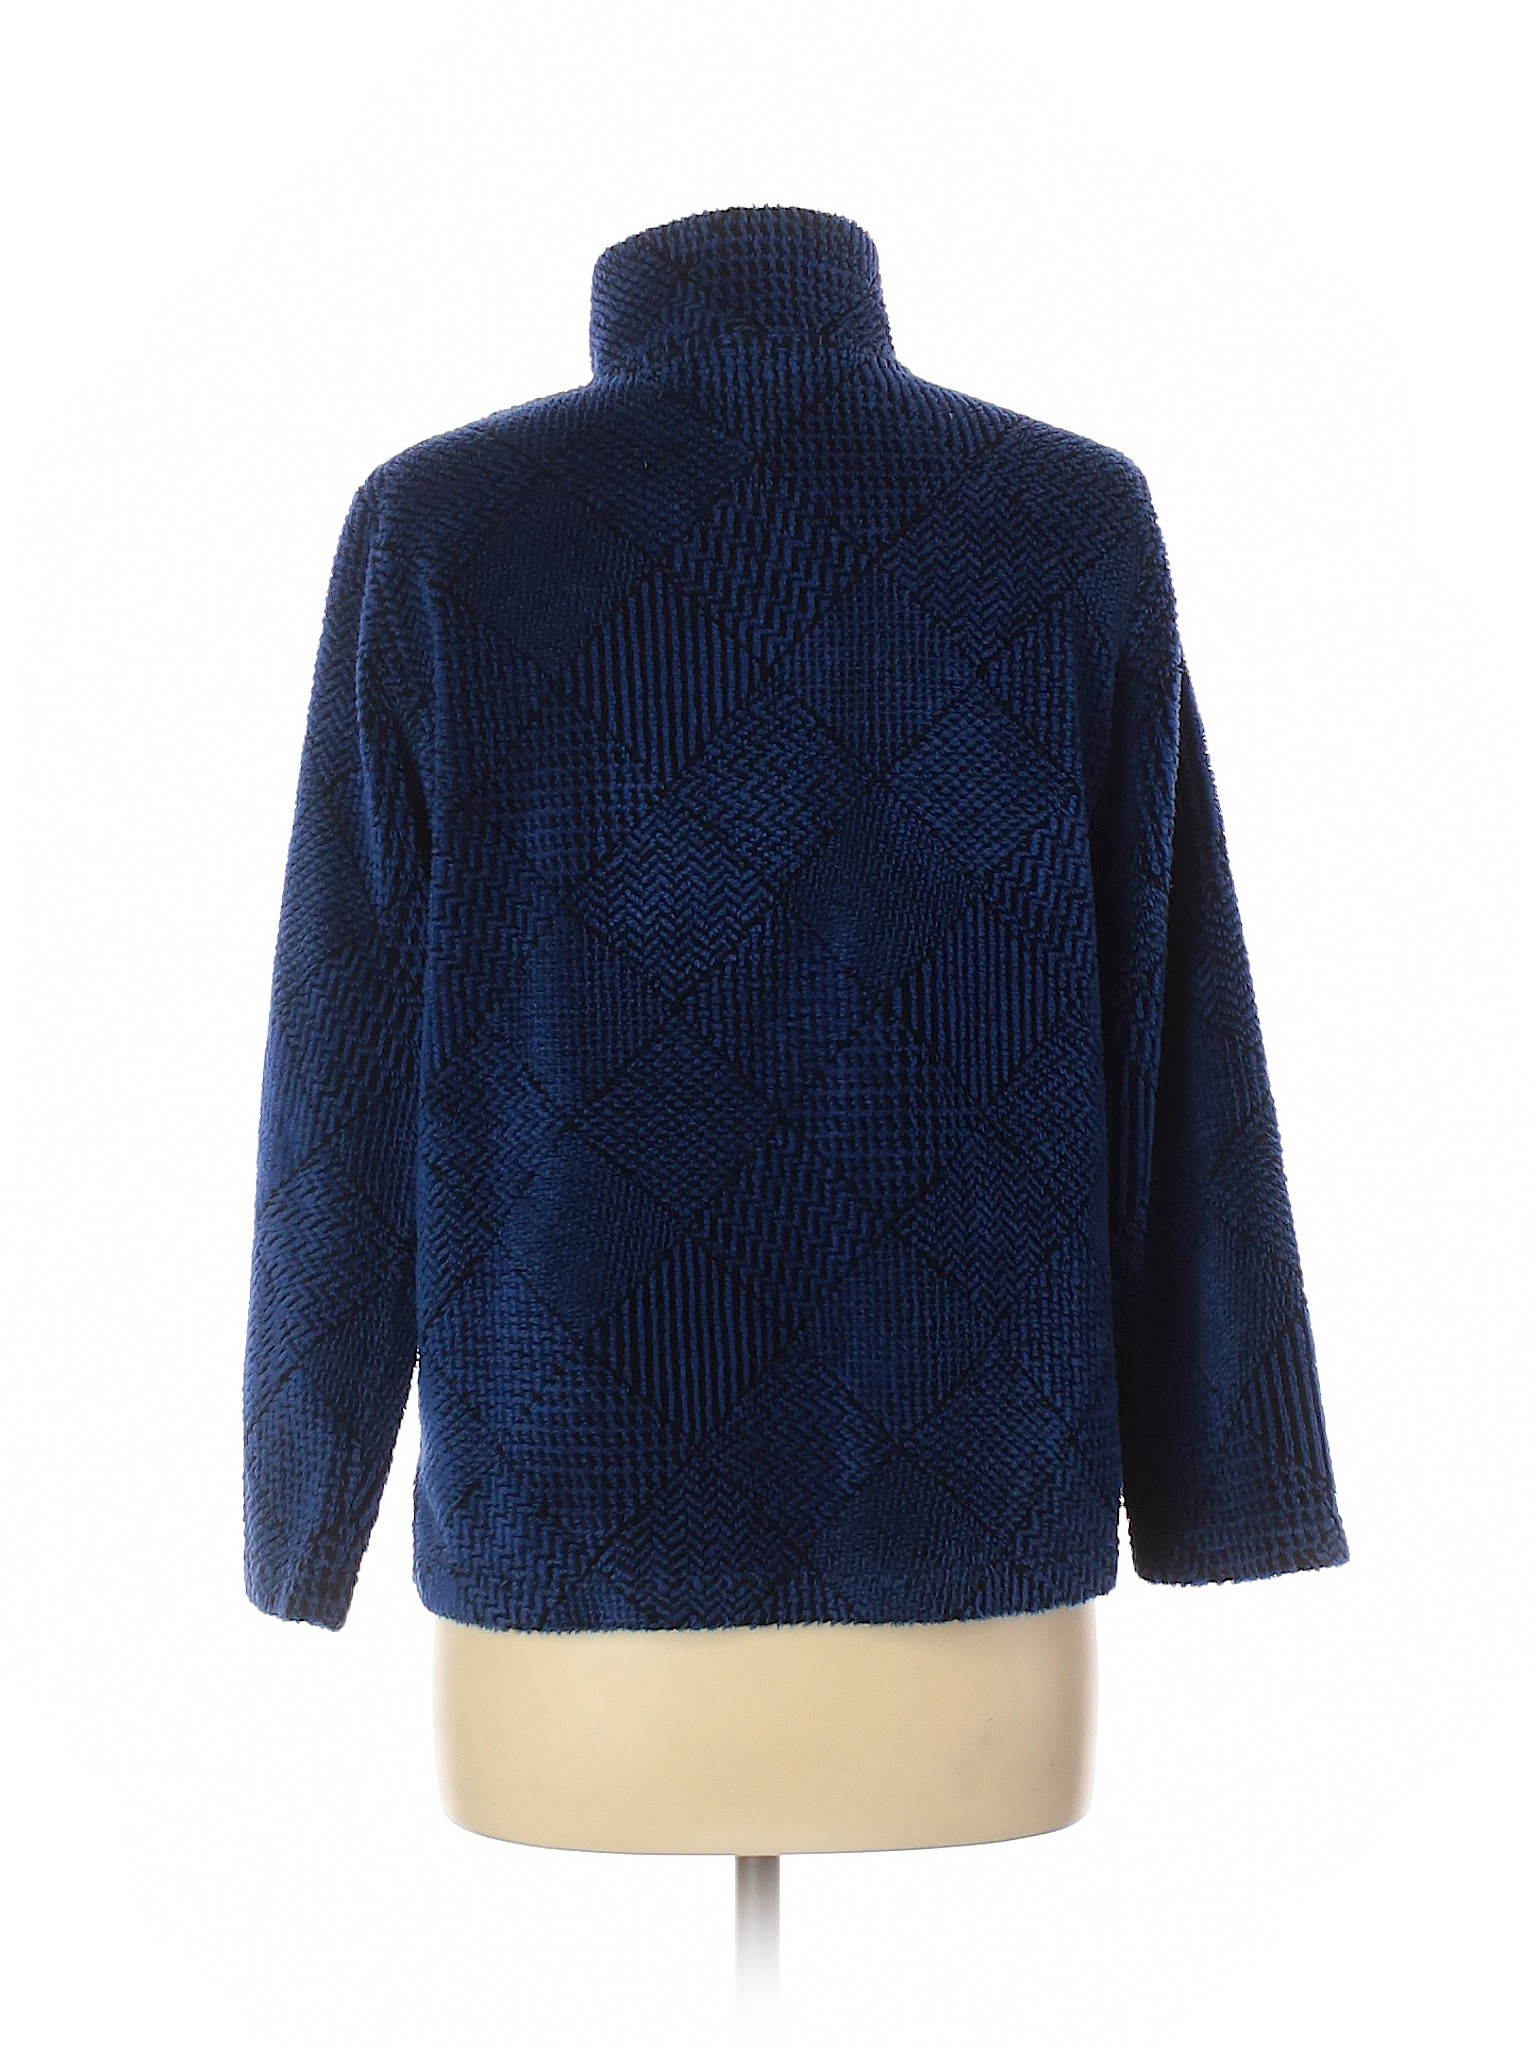 Talbots Women Blue Fleece 8 | eBay